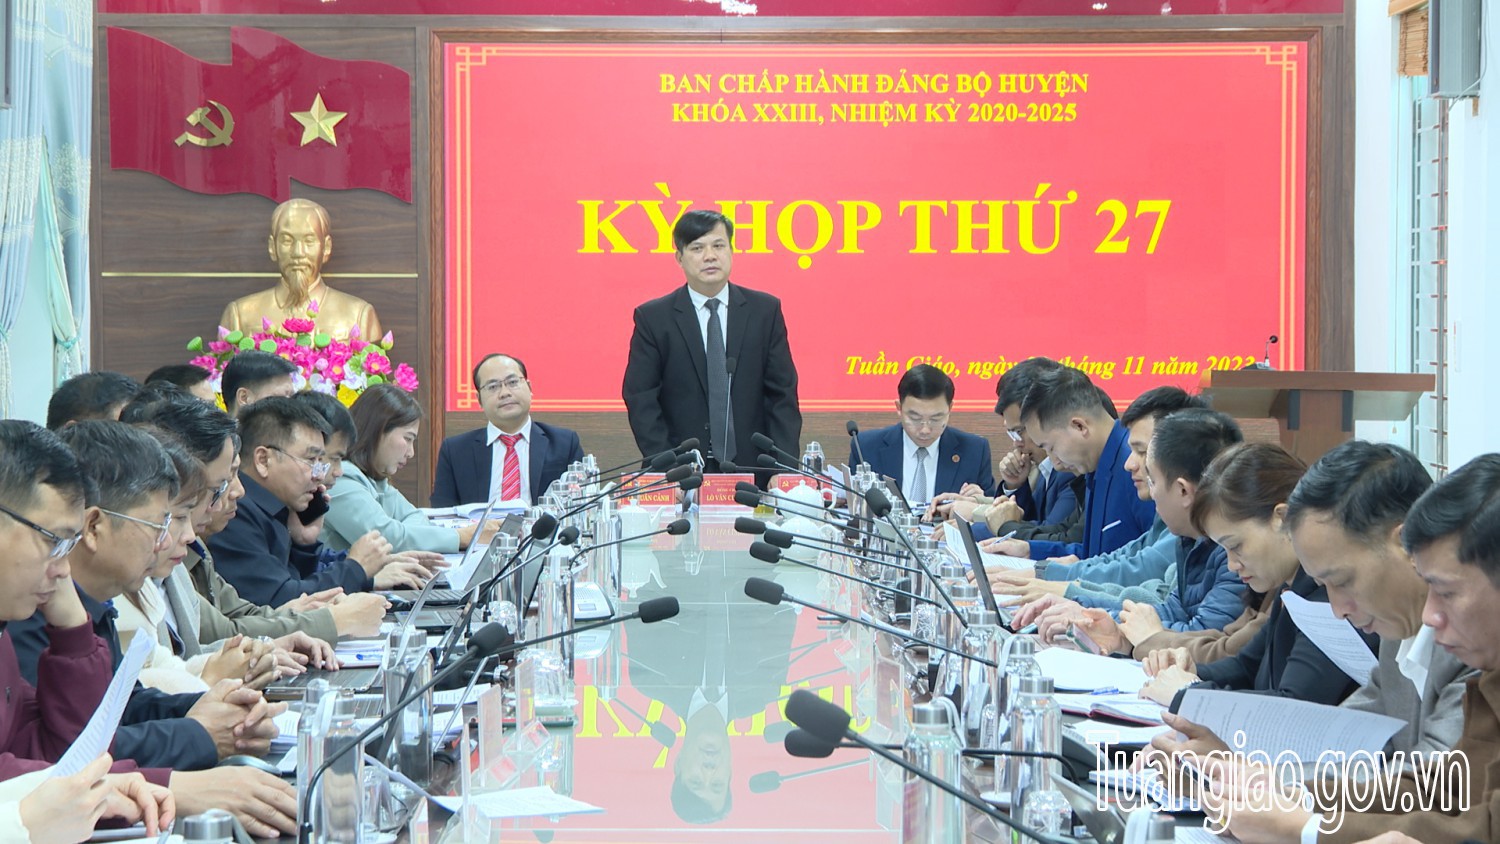 BCH Đảng bộ hình bầu cua tôm cá
, khoá XXIII, nhiệm kỳ 2020-2025 tổ chức kỳ họp thứ 27 mở rộng